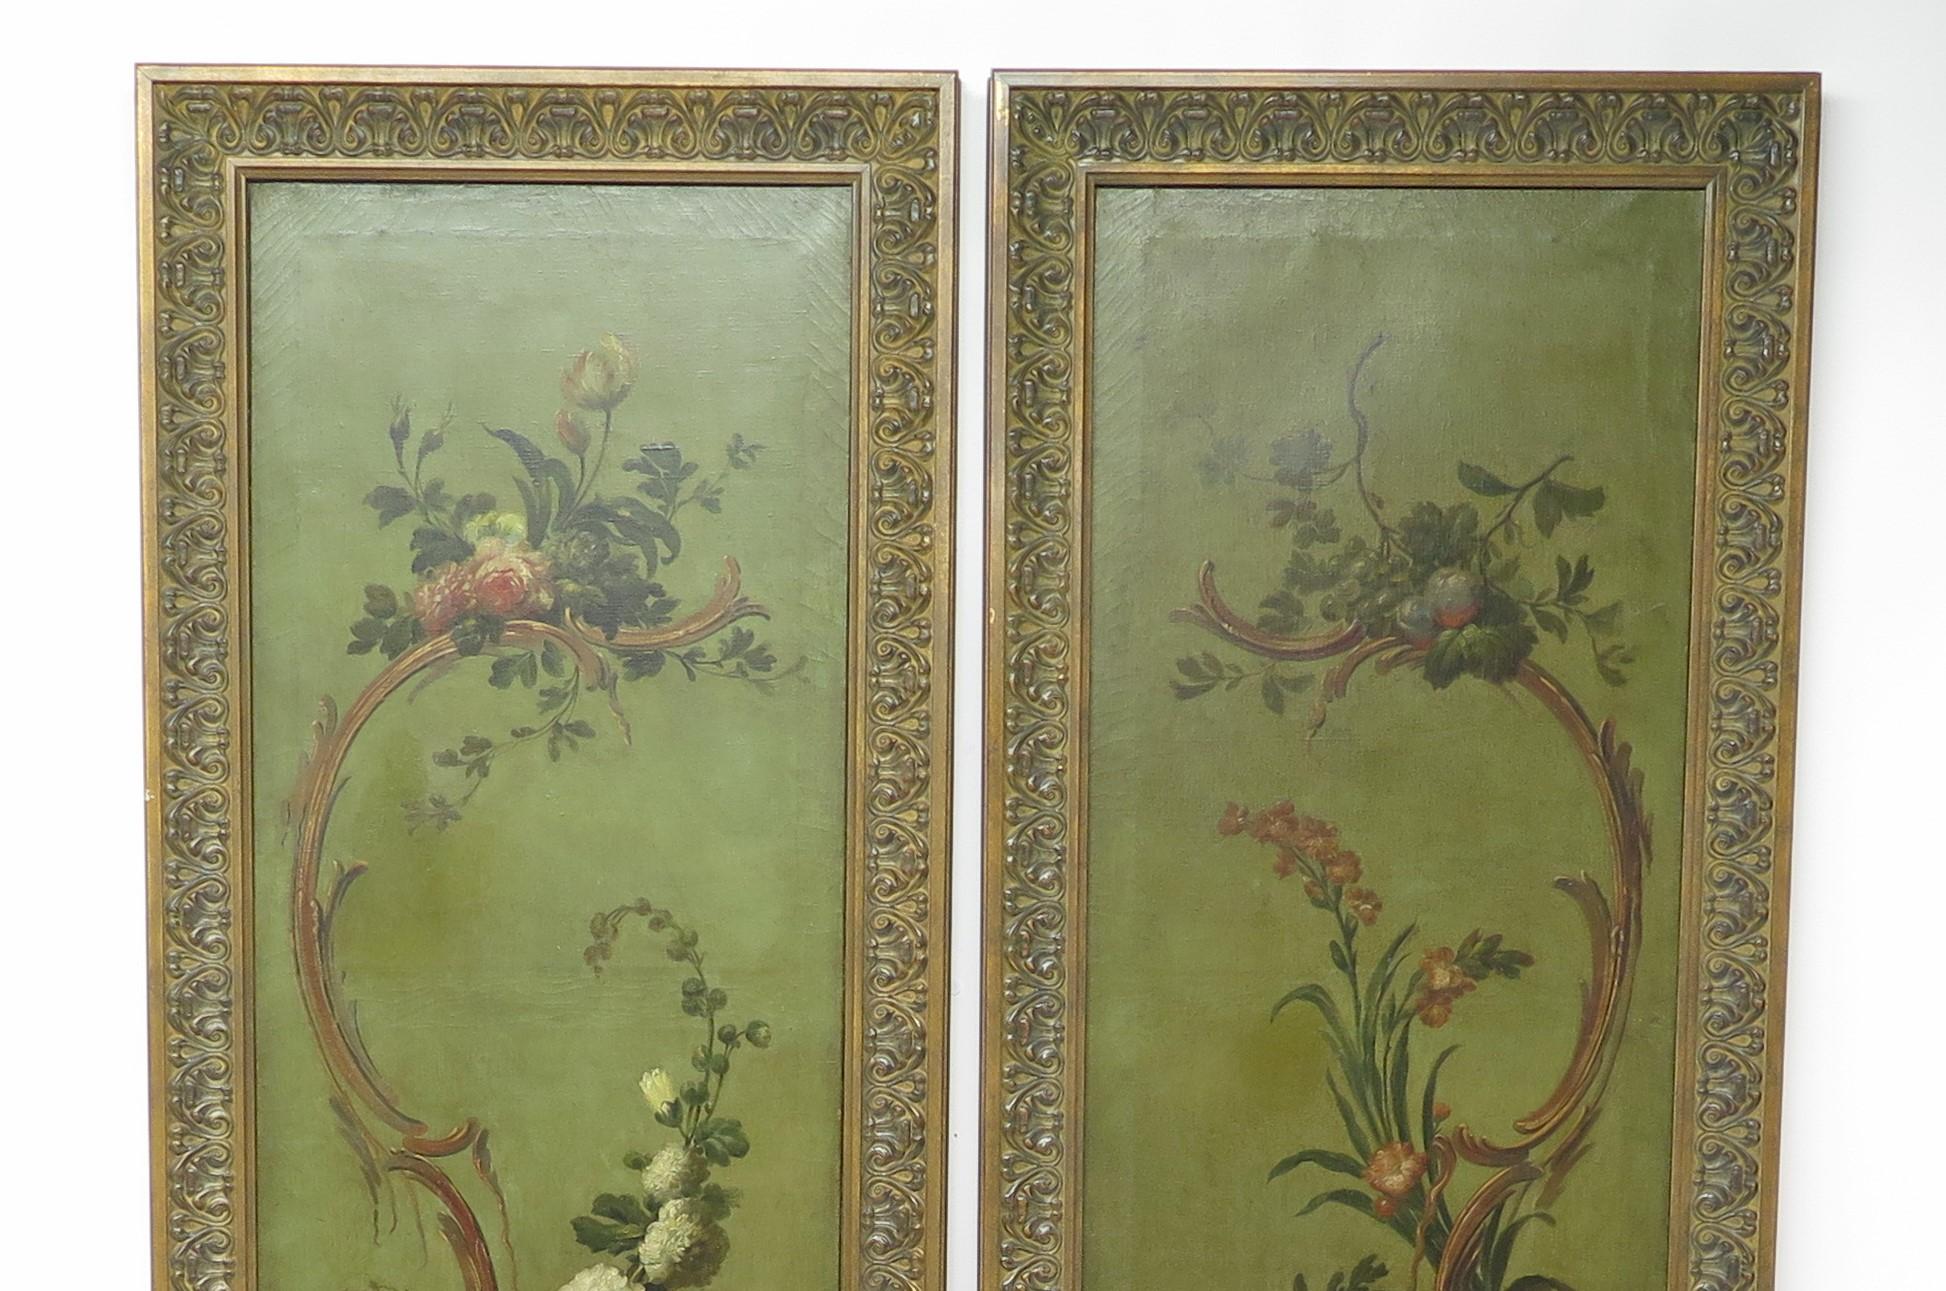 Paire de hauts panneaux peints du 19e siècle, huile sur toile, finement peints avec des fleurs, des feuillages et des scolytes, encadrés. Circa 1860. Angleterre.

MESURES :

Cadre 106